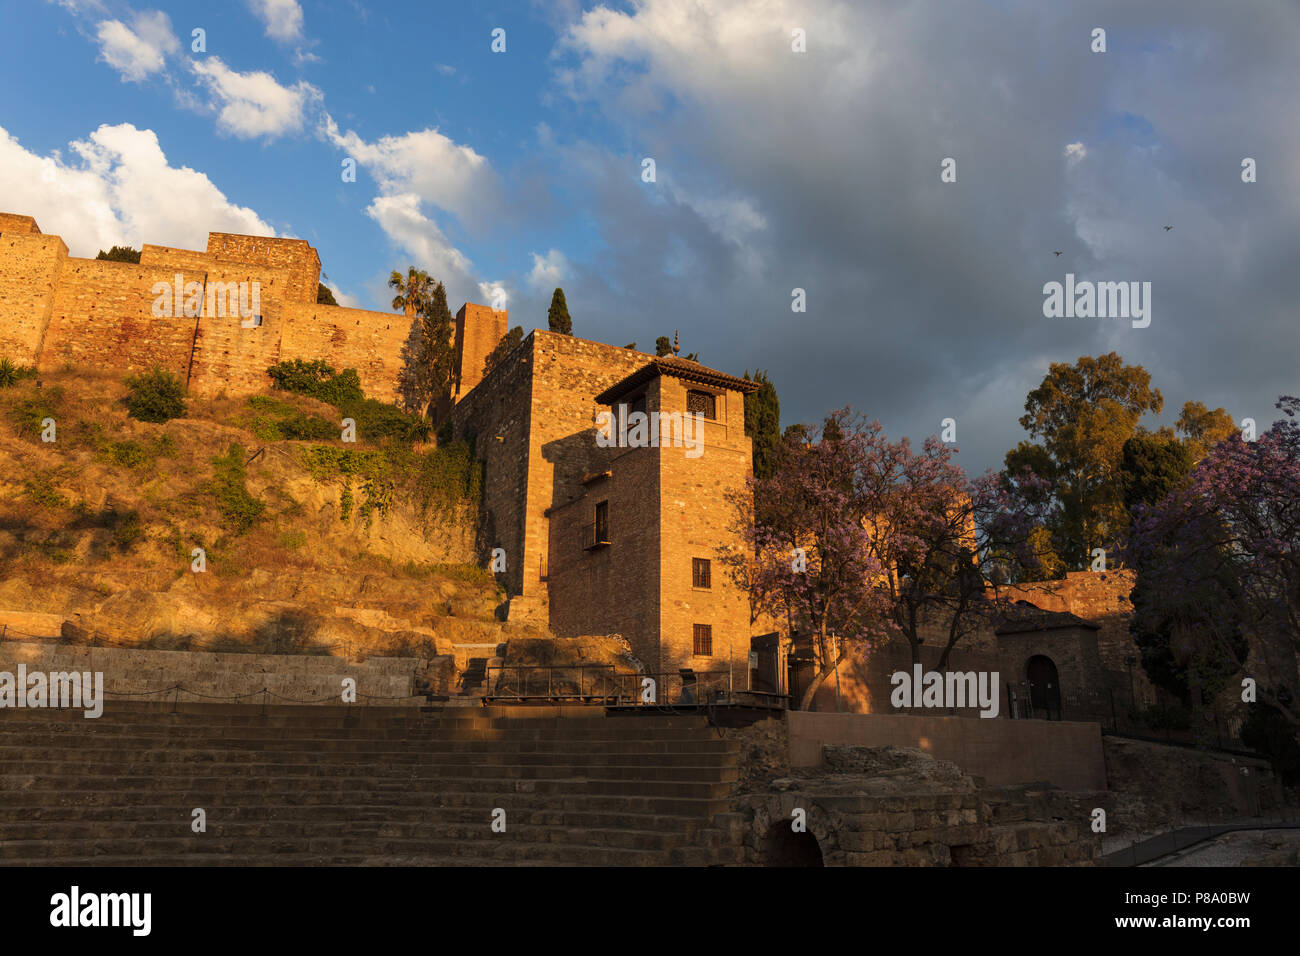 Malaga, Costa del Sol, Provinz Malaga, Andalusien, Südspanien. Die maurische Festung Alcazaba, am späten Nachmittag. Stockfoto